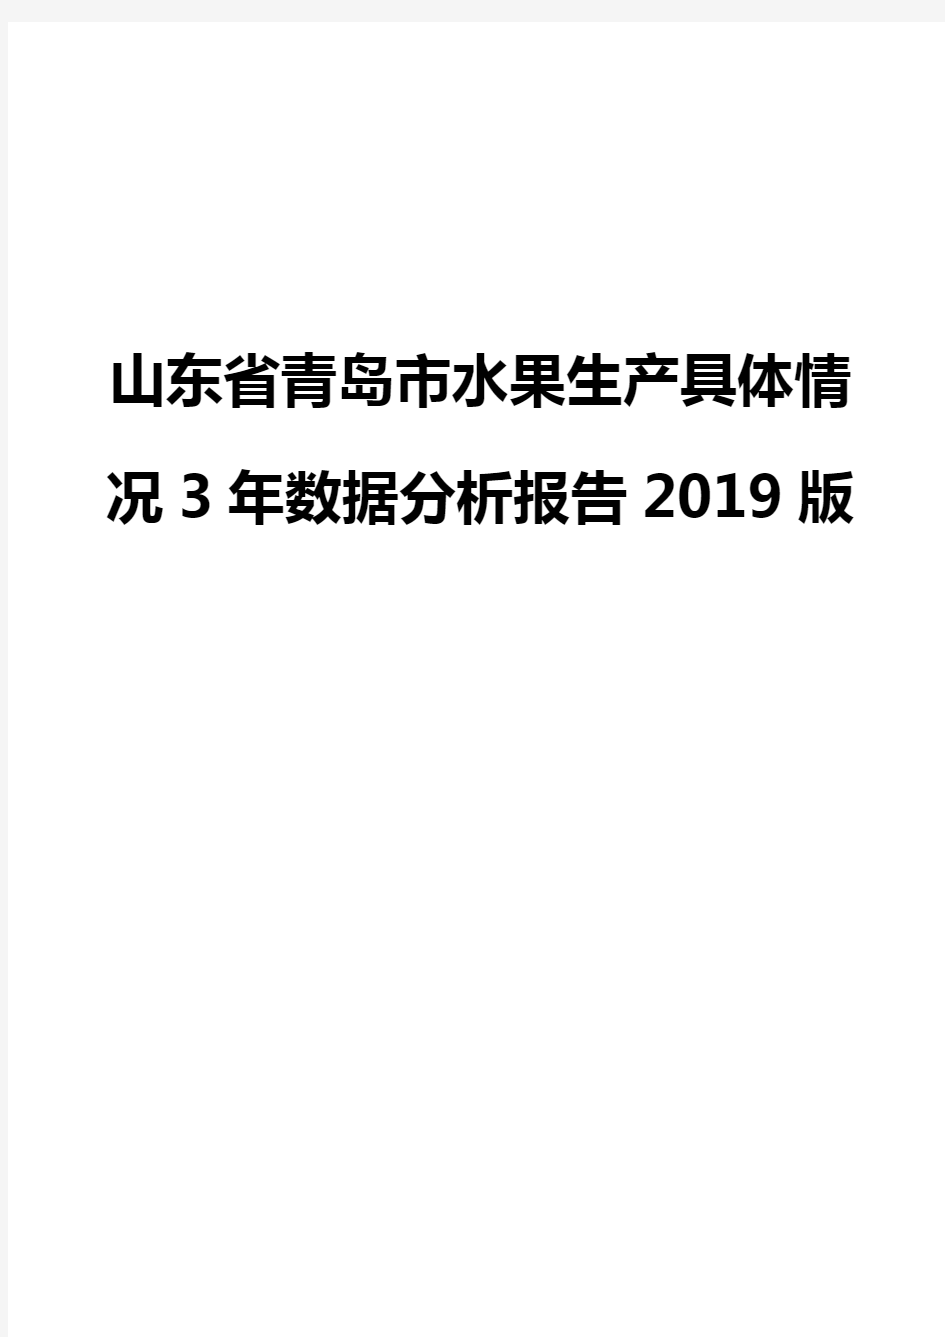 山东省青岛市水果生产具体情况3年数据分析报告2019版